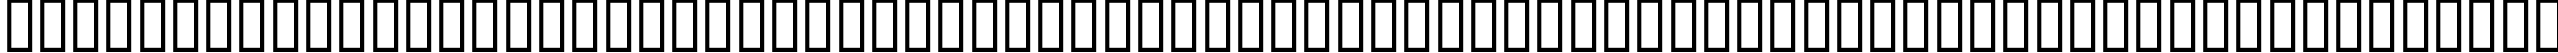 Пример написания английского алфавита шрифтом P22 Da Vinci Extras